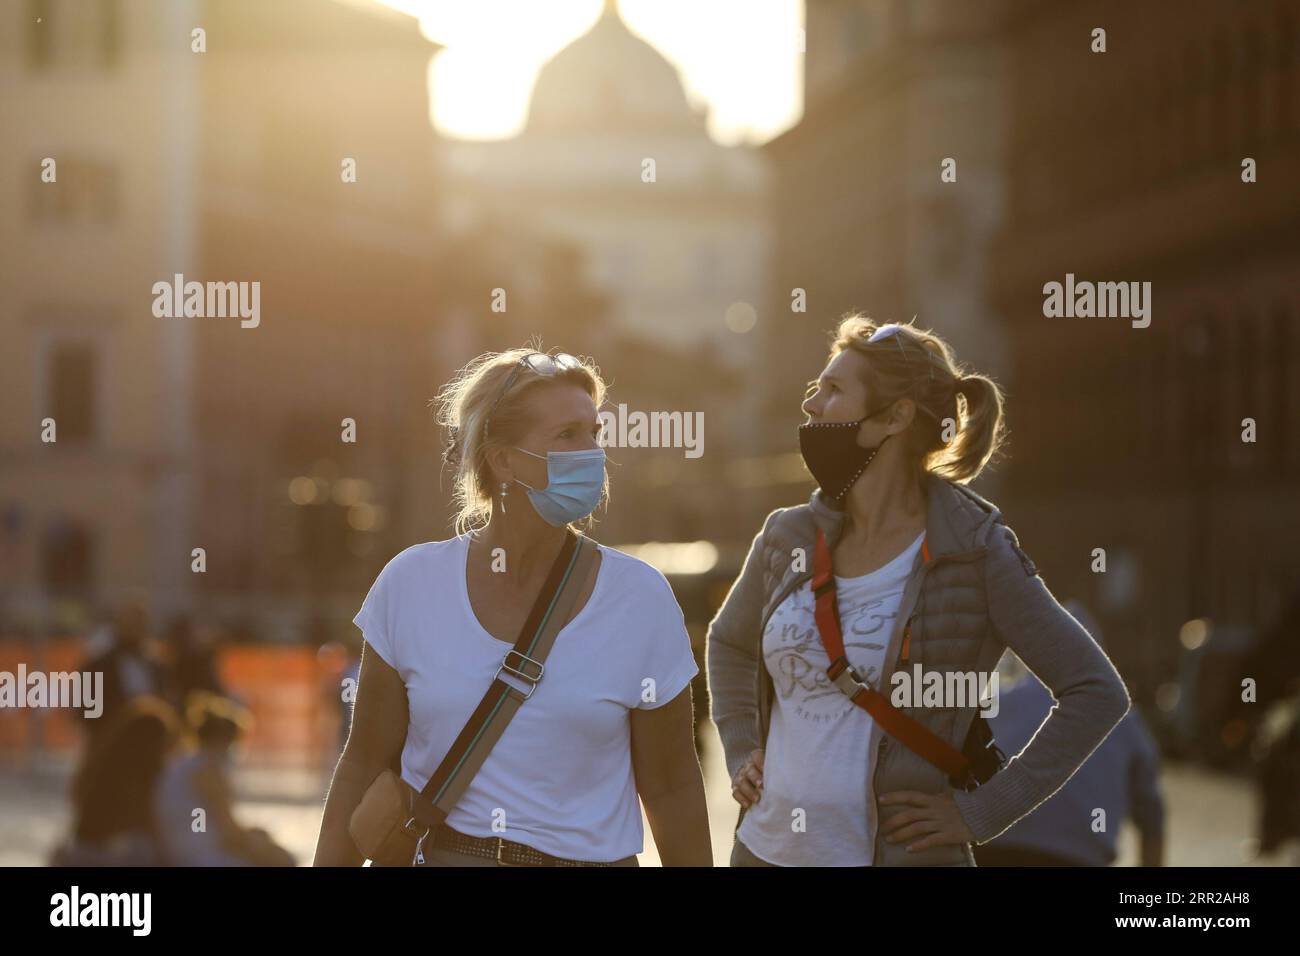 201007 -- ROM, 7. Oktober 2020 -- Menschen mit Gesichtsmasken gehen auf der Piazza Venezia in Rom, Italien, 6. Oktober 2020. Fünf südliche Regionen Italiens haben obligatorische Maskengesetze eingeführt, auch für Menschen in Freiräumen. Und die Regierung hat angekündigt, dass der nationale Ausnahmezustand, der erstmals am 31. Januar in Kraft gesetzt wurde, zumindest bis zu seinem einjährigen Jahrestag verlängert wird. ITALIEN-ROM-NATIONALER STAAT DER NOTVERLÄNGERUNG CHENGXTINGTING PUBLICATIONXNOTXINXCHN Stockfoto